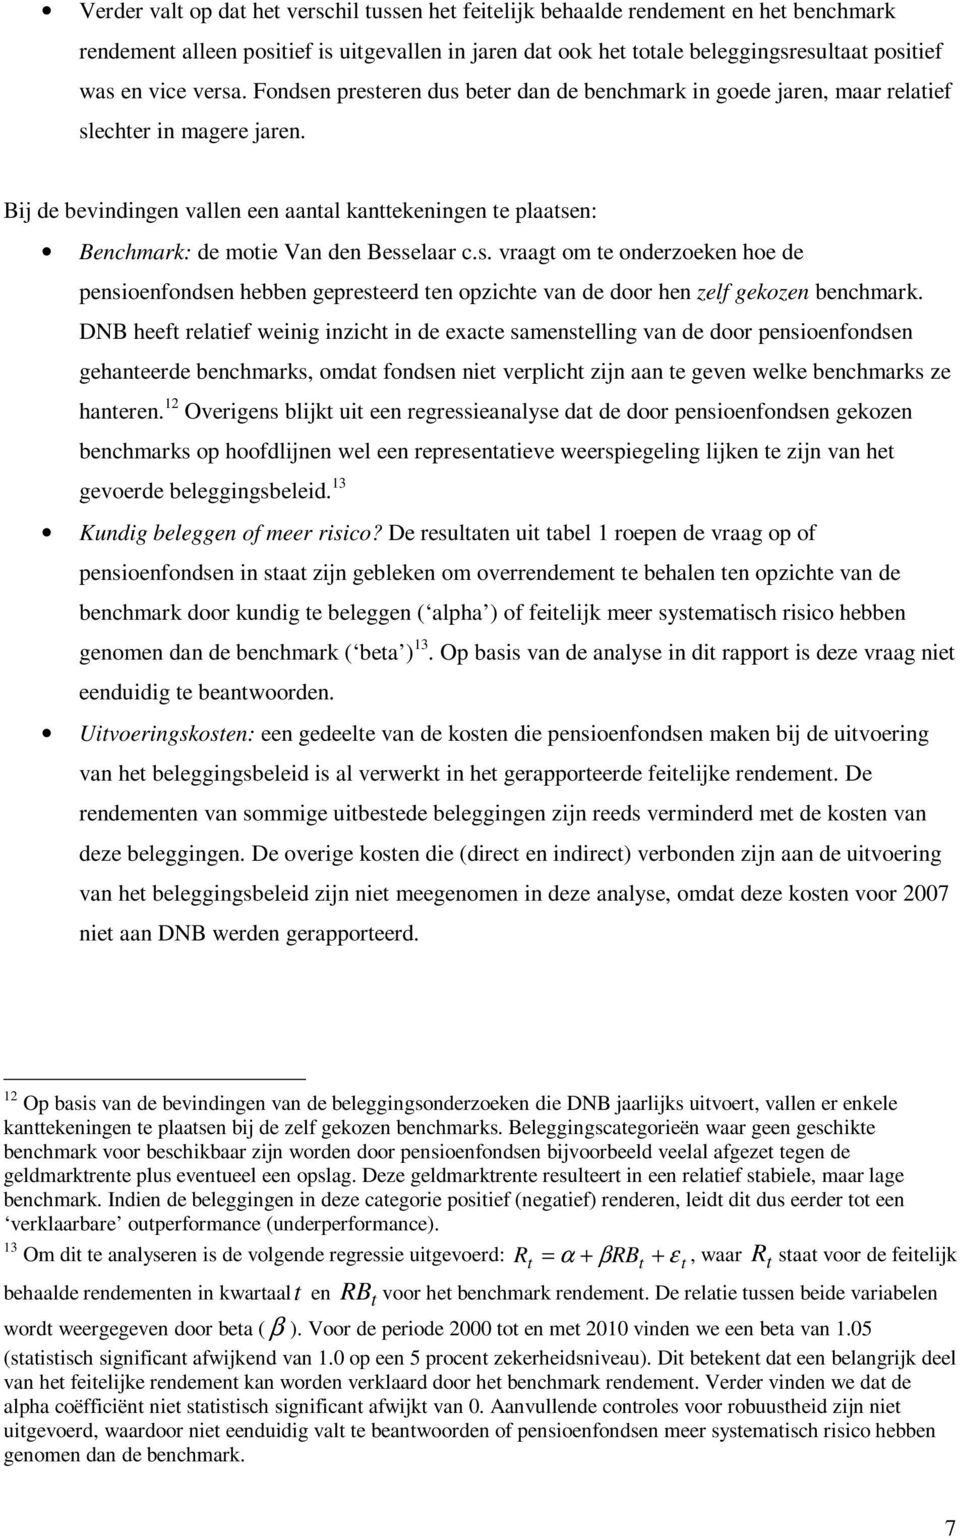 Bij de bevindingen vallen een aantal kanttekeningen te plaatsen: Benchmark: de motie Van den Besselaar c.s. vraagt om te onderzoeken hoe de pensioenfondsen hebben gepresteerd ten opzichte van de door hen zelf gekozen benchmark.